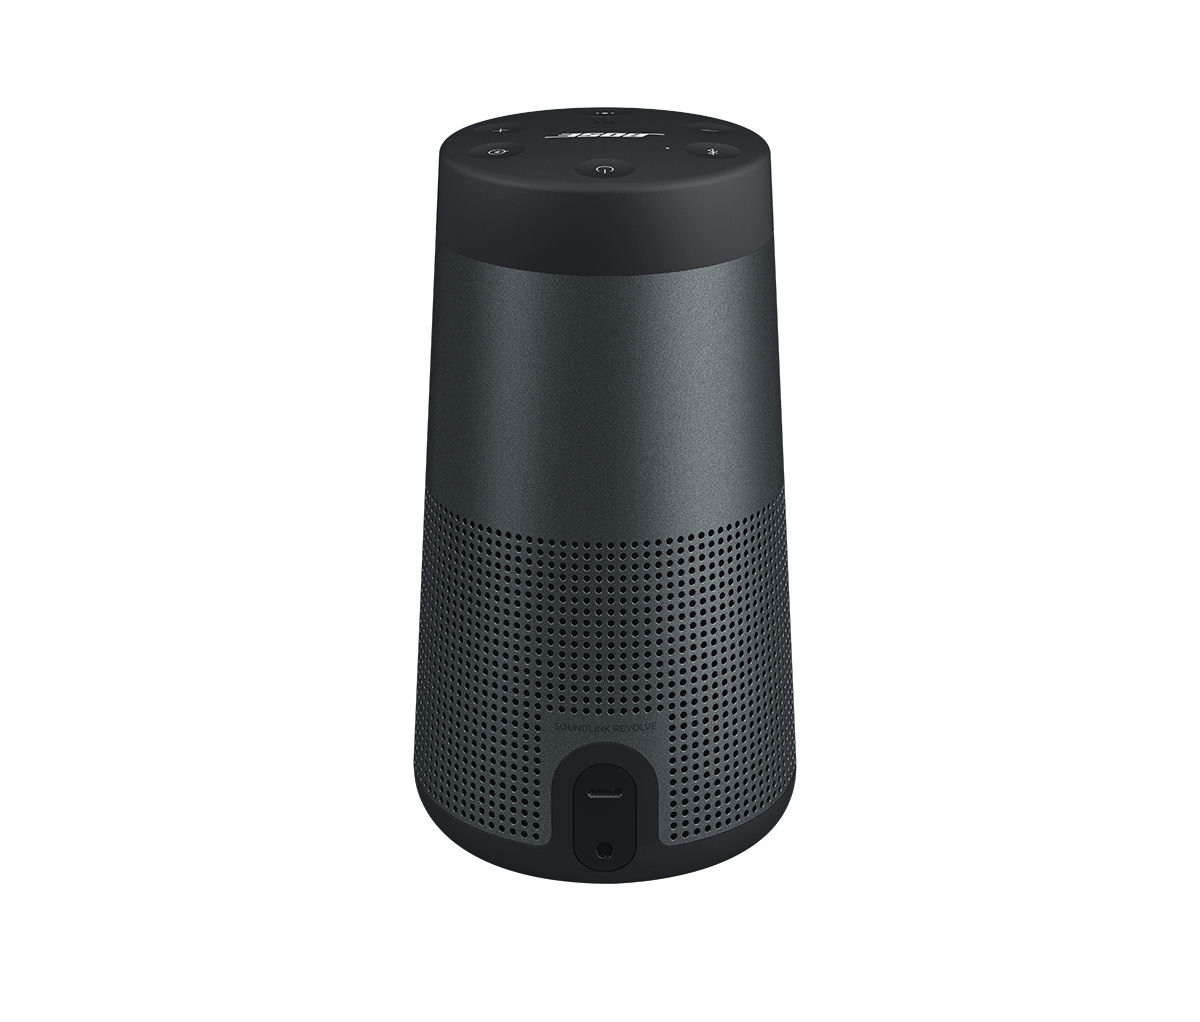 SoundLink Revolve Bluetooth speaker – Produkt-Support von Bose